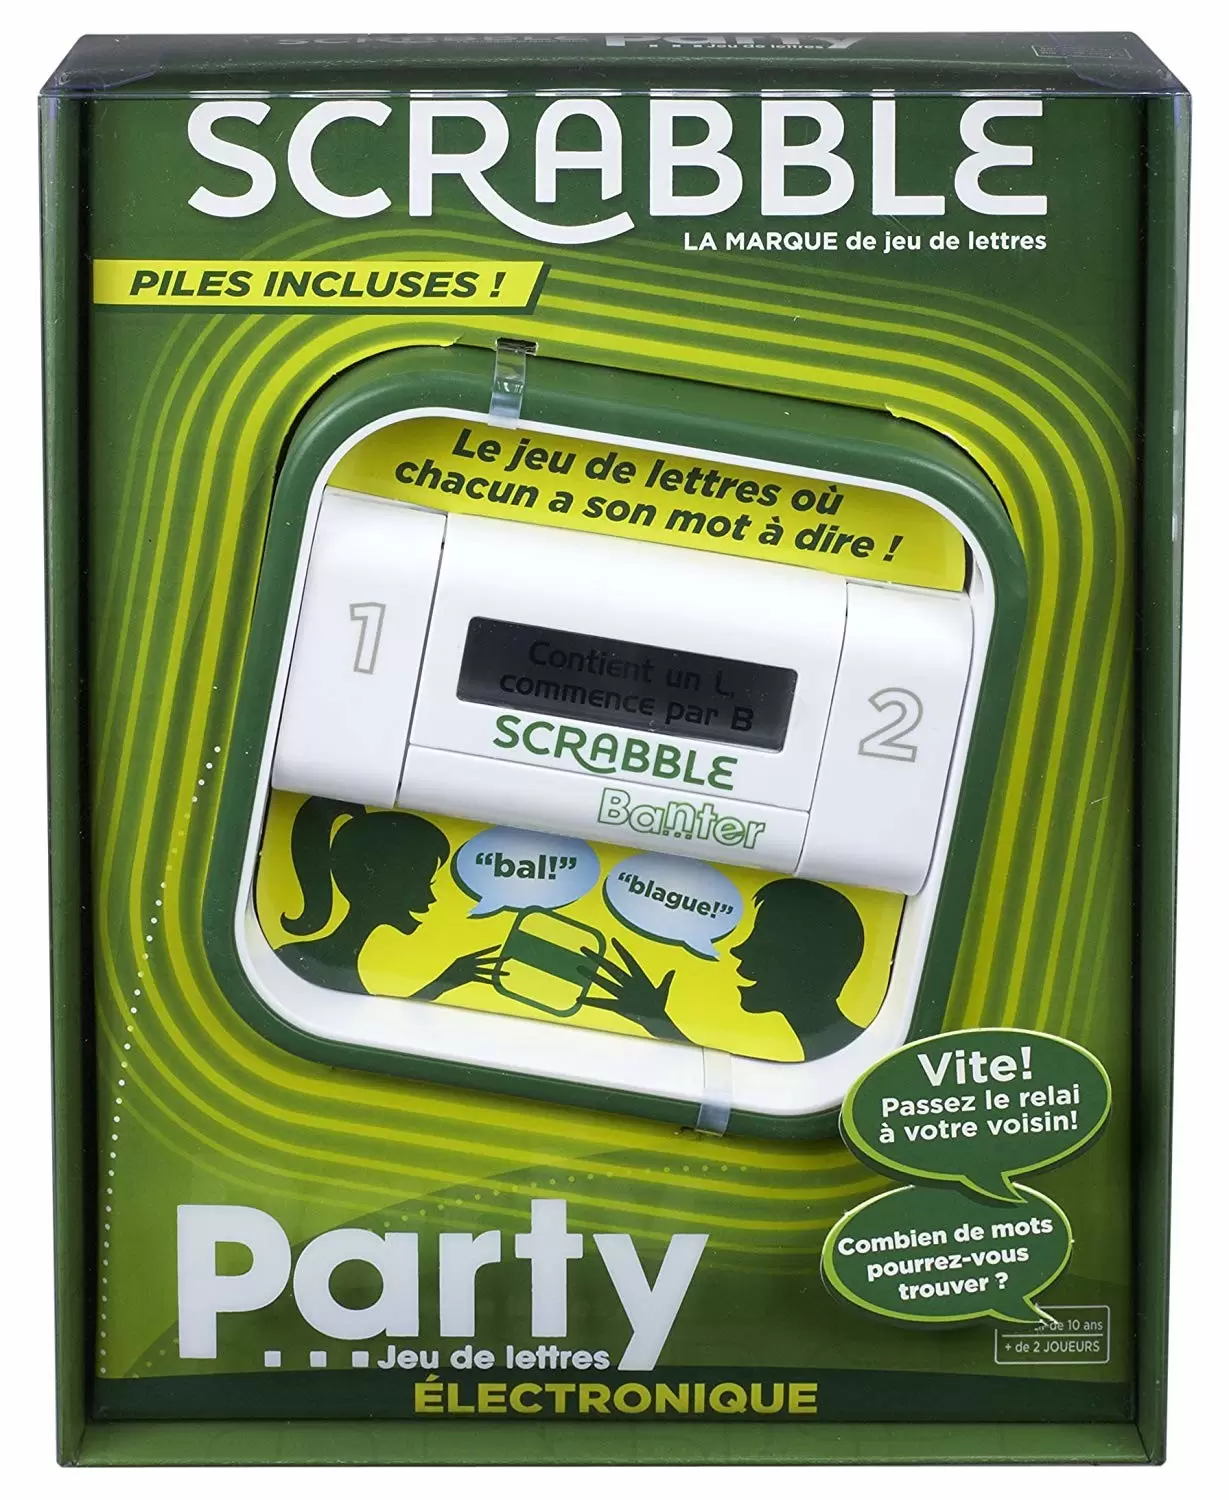 Scrabble - Scrabble Party Electronique - Banter